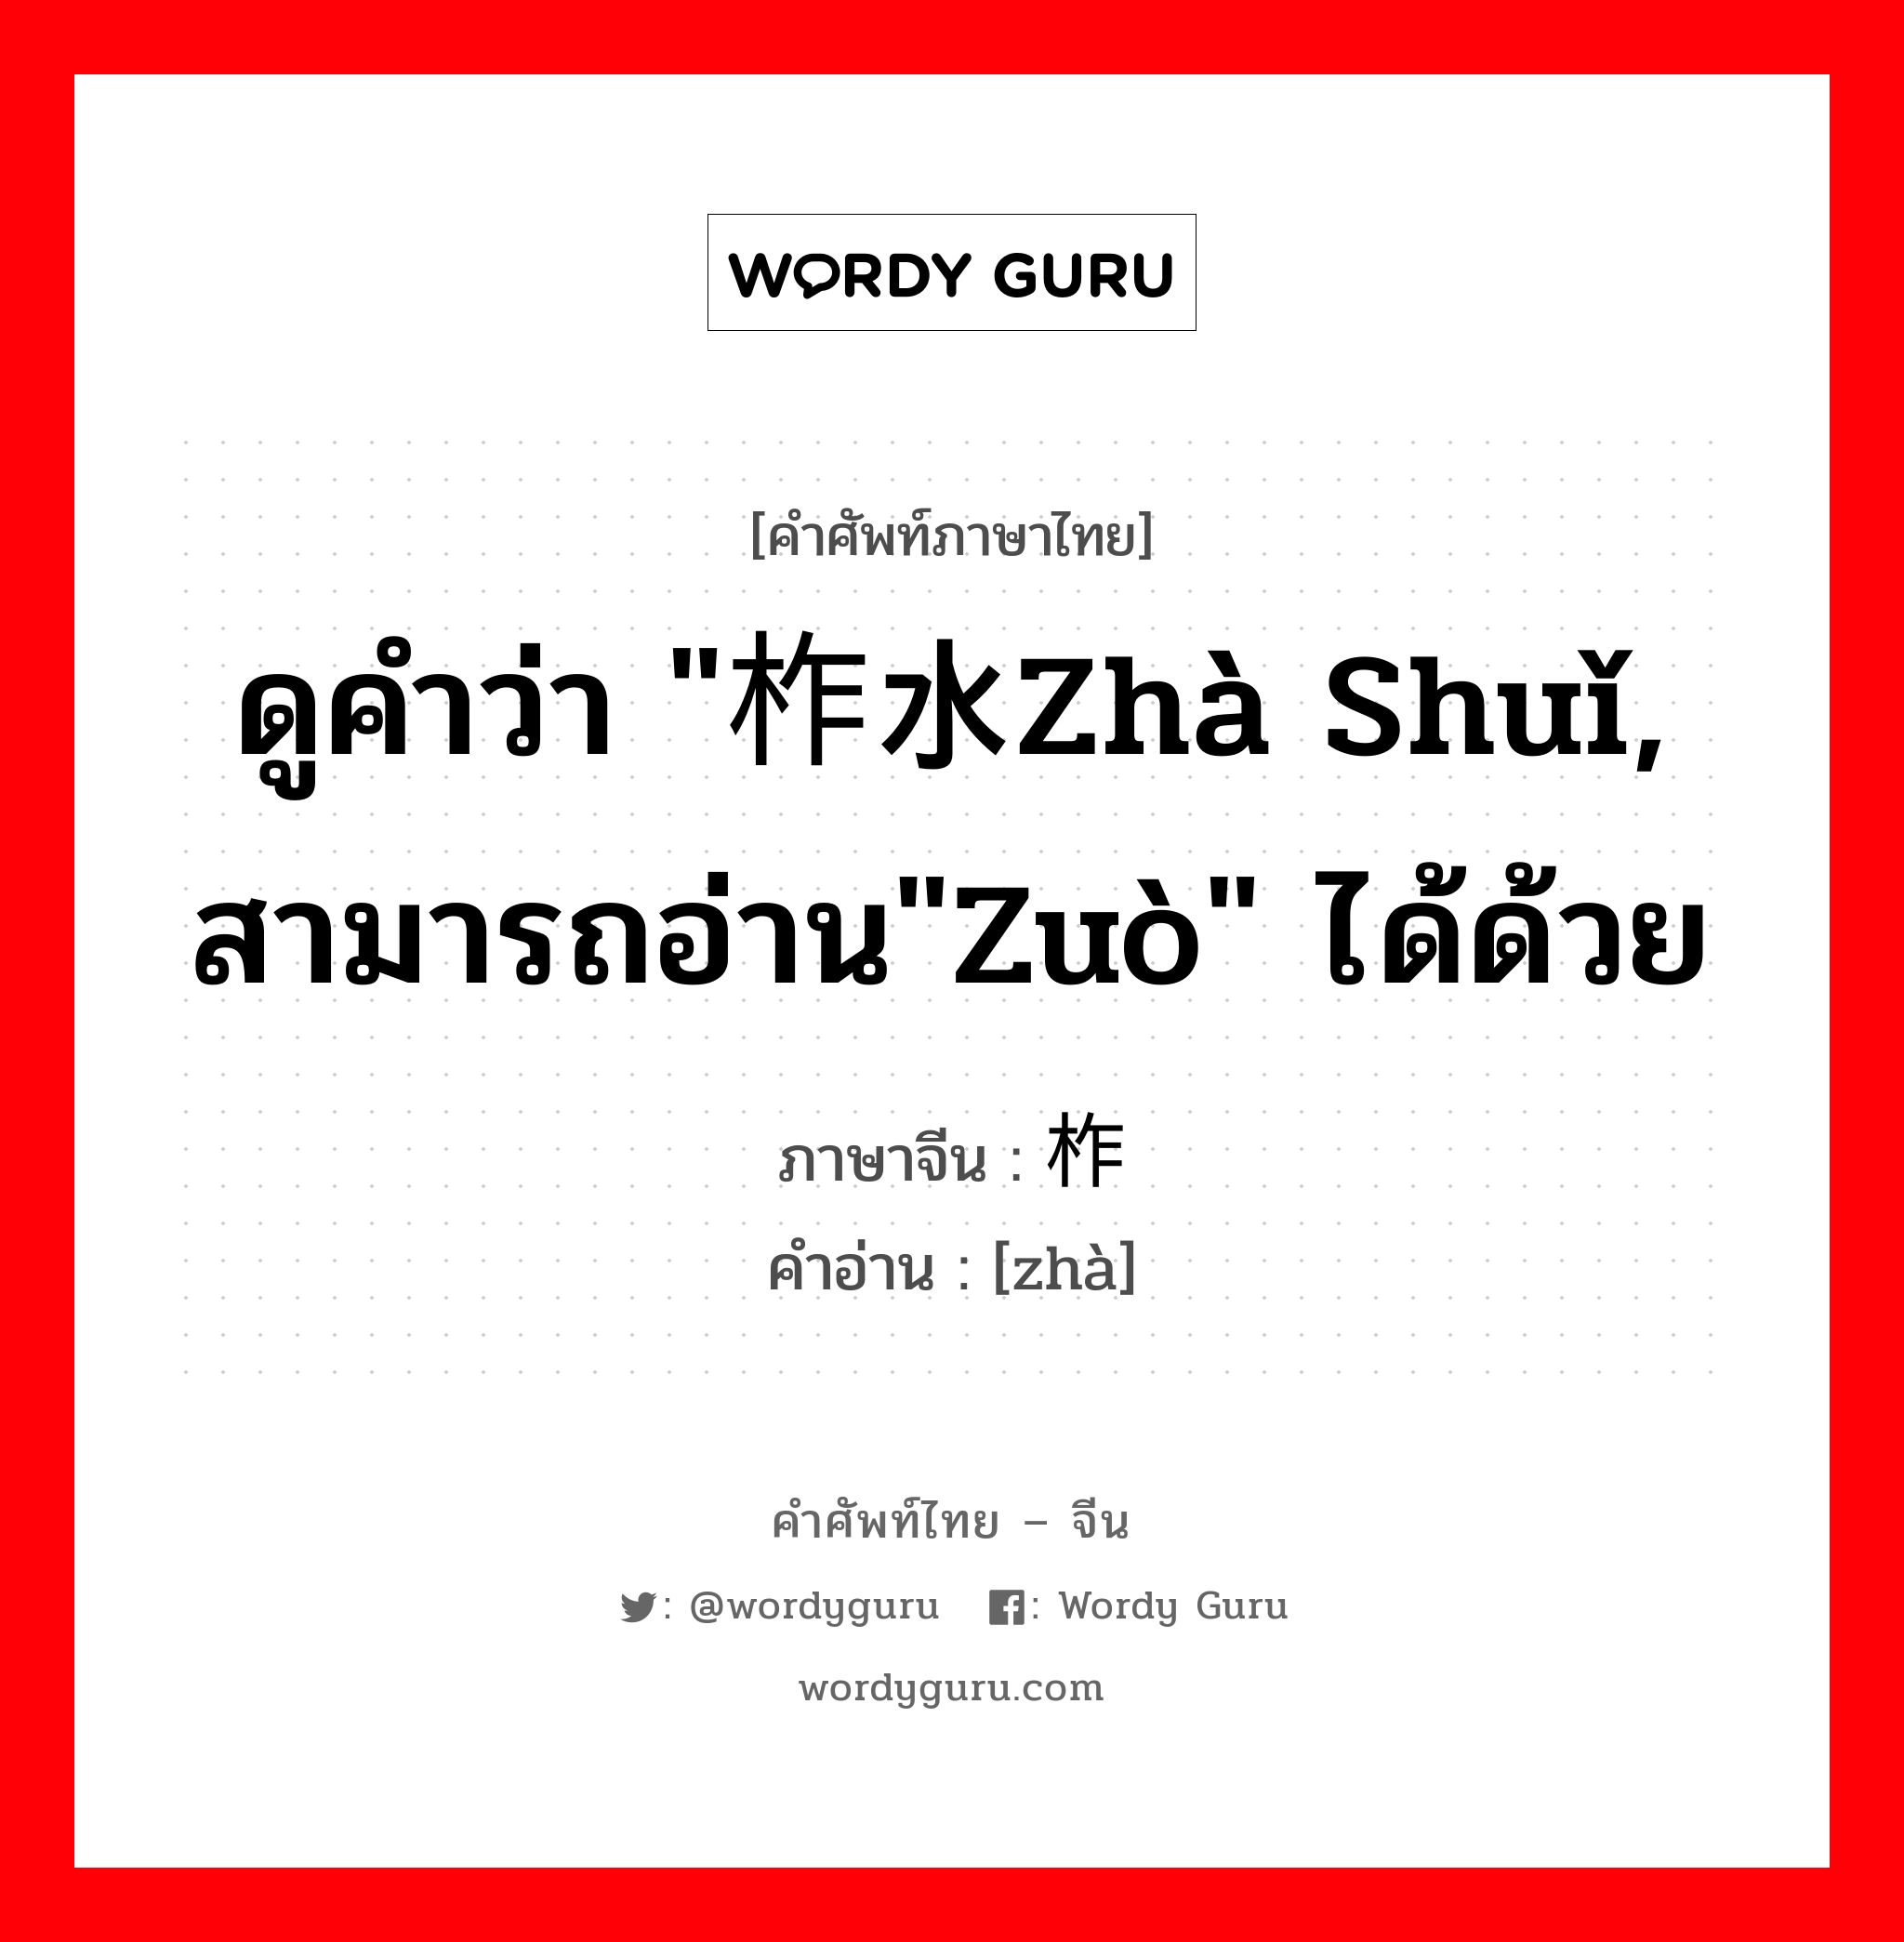 ดูคำว่า "柞水zhà shuǐ, สามารถอ่าน"zuò" ได้ด้วย ภาษาจีนคืออะไร, คำศัพท์ภาษาไทย - จีน ดูคำว่า "柞水zhà shuǐ, สามารถอ่าน"zuò" ได้ด้วย ภาษาจีน 柞 คำอ่าน [zhà]